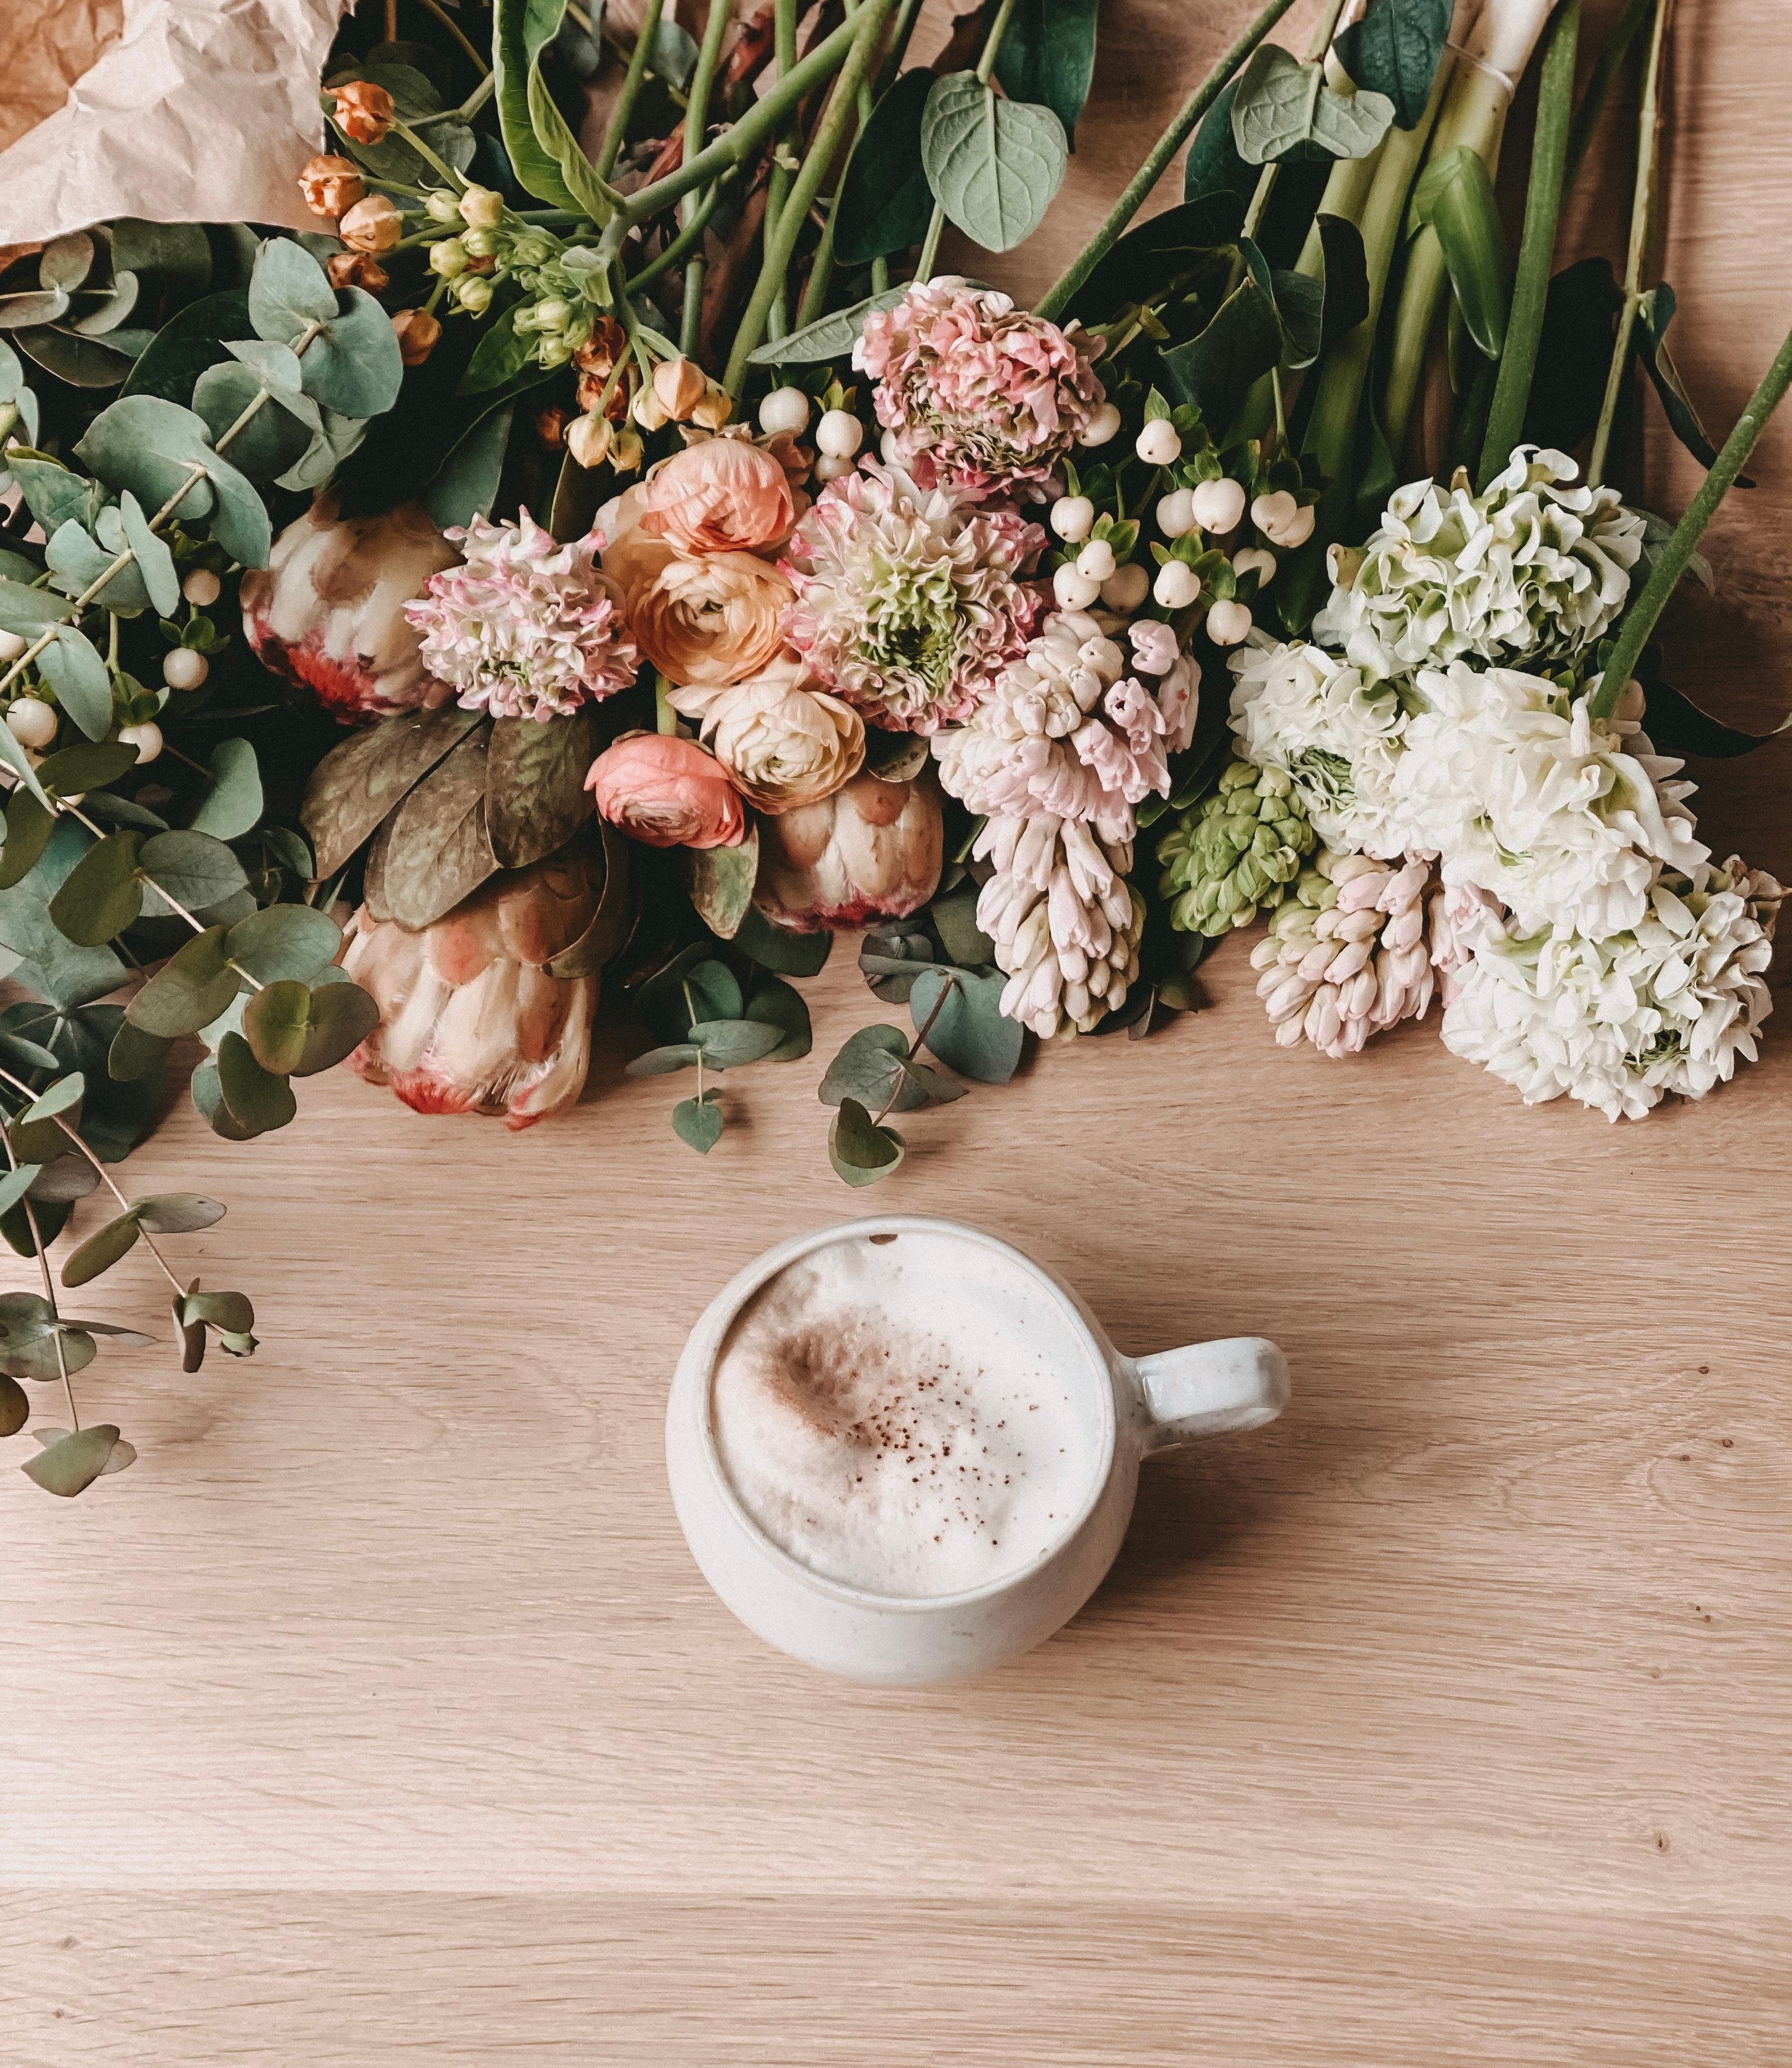 Happy Weekend mit einem bunten Blumengruß 🌸
#flowerlove
#myfreshflowerfriday
#coffeelove